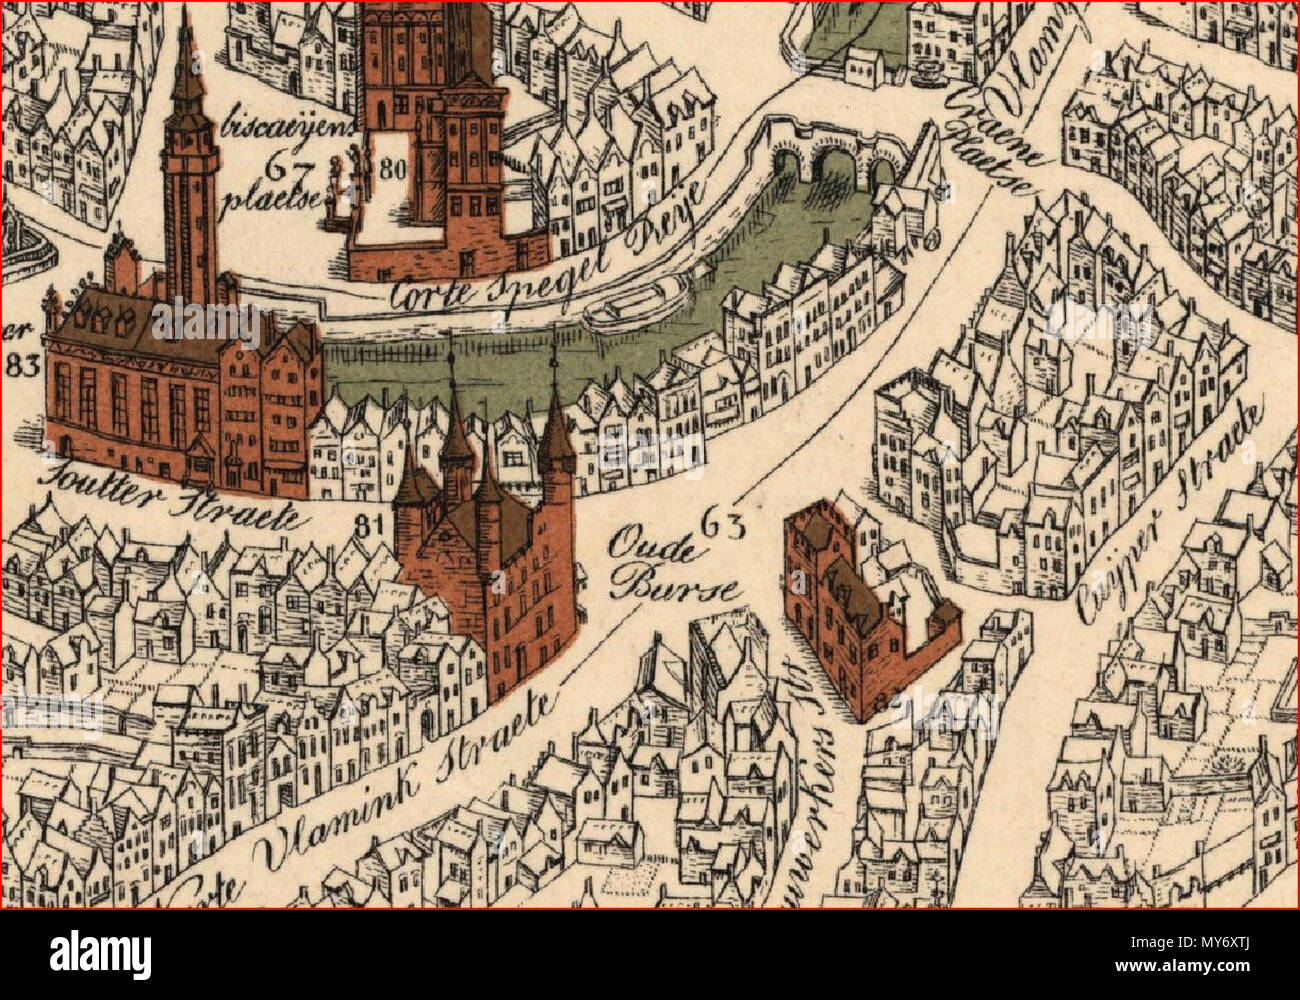 . Inglese: "Oude Burse' piazza di Bruges. Dettagli dalla mappa della città incisione di Marcus Gerards (1562). Strada nomi aggiunti alla mappa nel 1751 e 1762. Il nord è orientata all'angolo inferiore sinistro. 2 marzo 2014, 13:50:16. Marcus Gerards 402 Oude Burse (1562) Foto Stock